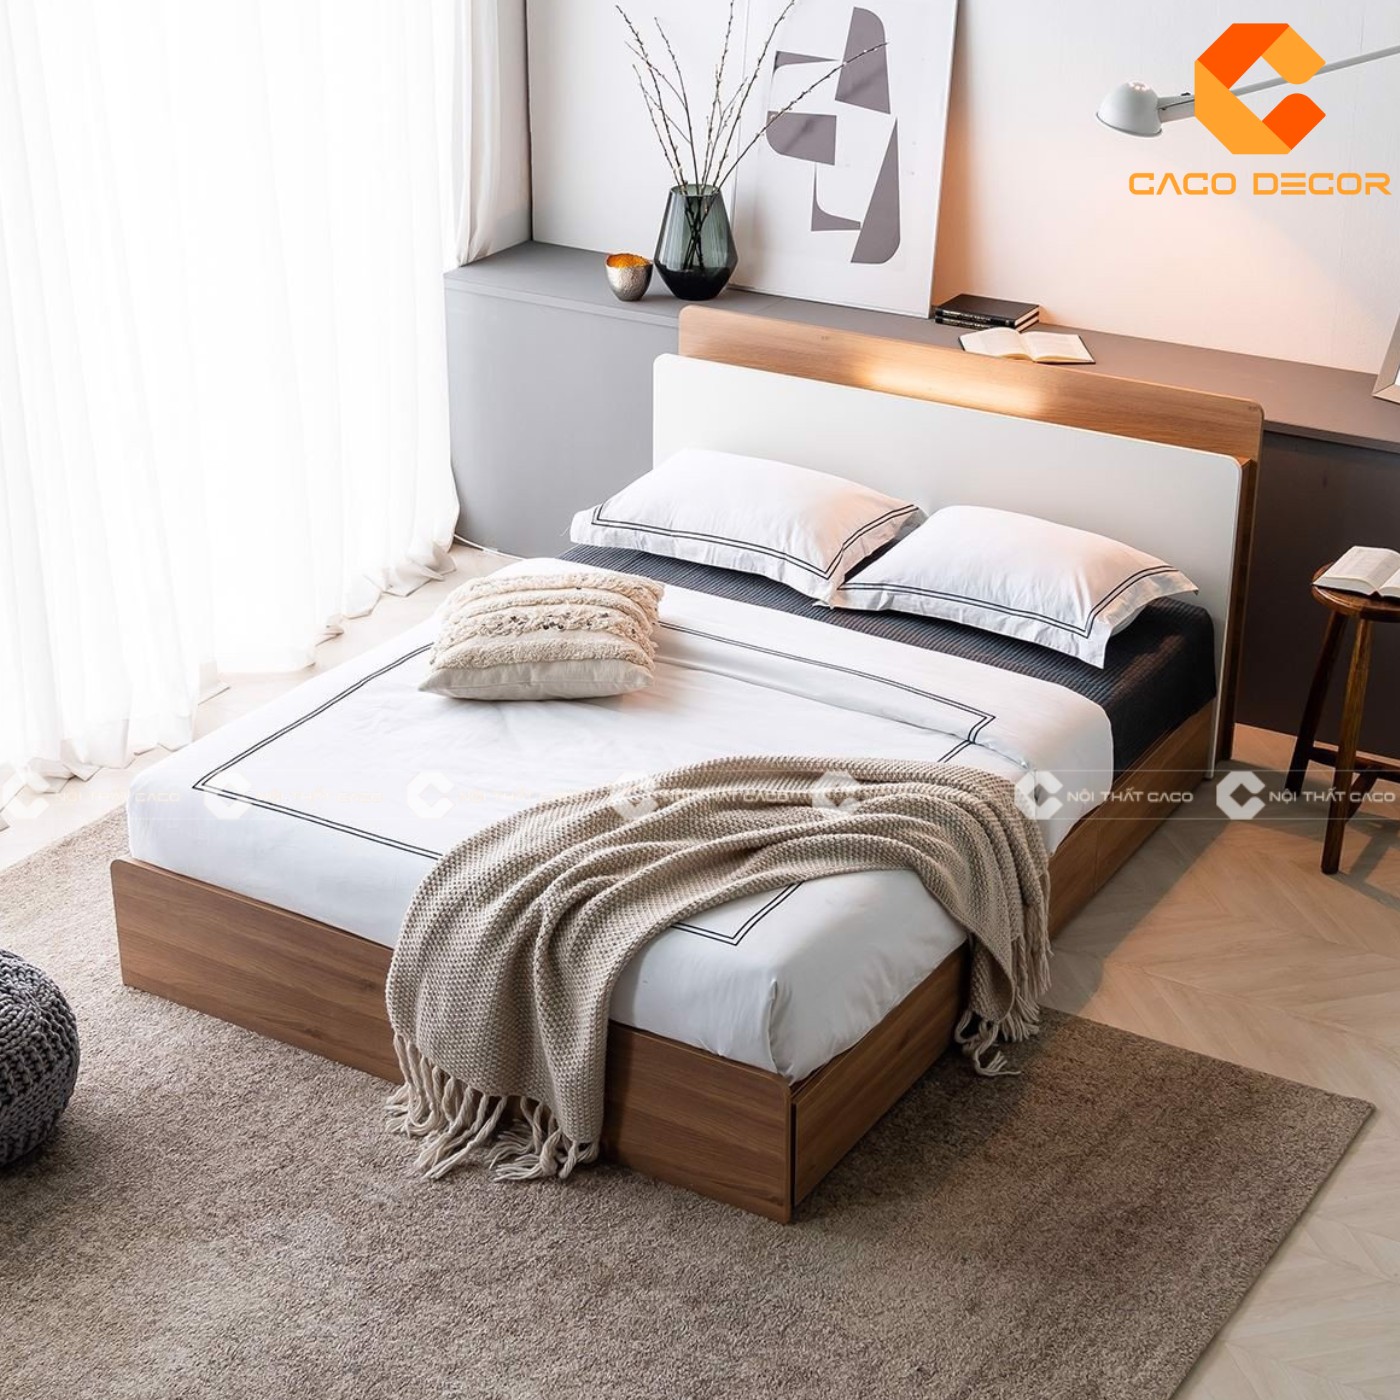 Giường ngủ gỗ công nghiệp đẹp, chất lượng với giá tốt nhất thị trường 18